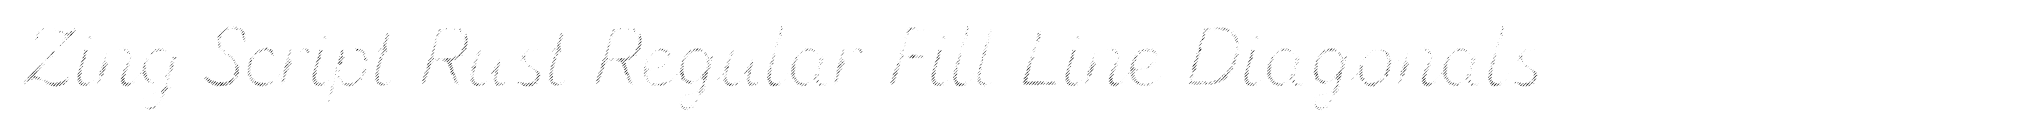 Zing Script Rust Regular Fill Line Diagonals image